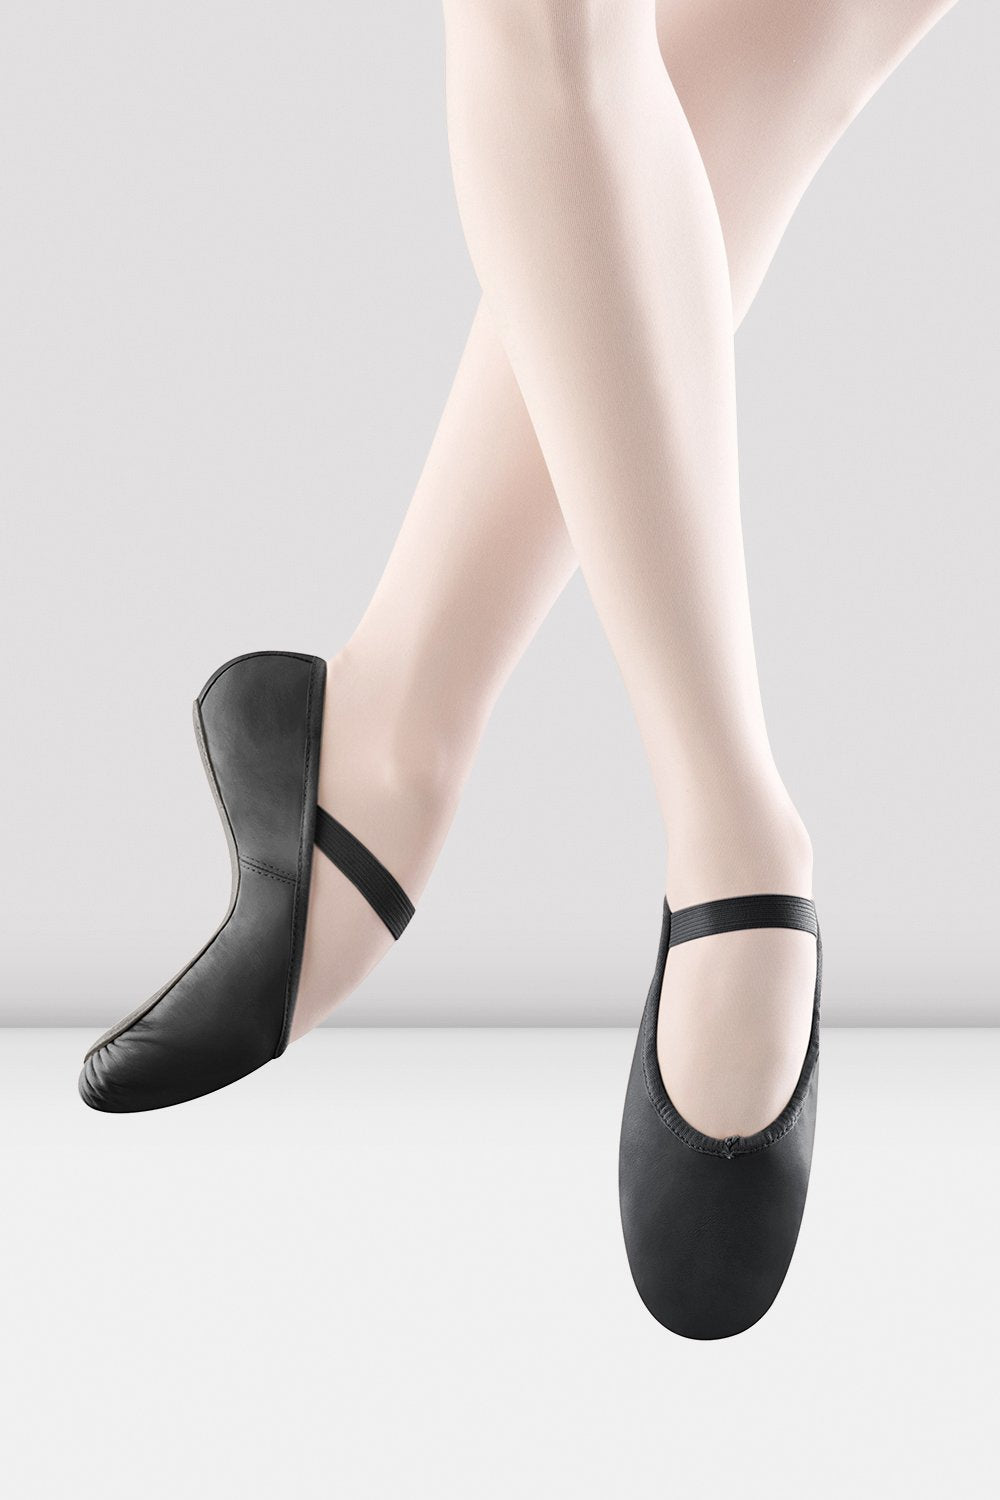 Zapatillas de ballet de cuero Arise para niñas, negras